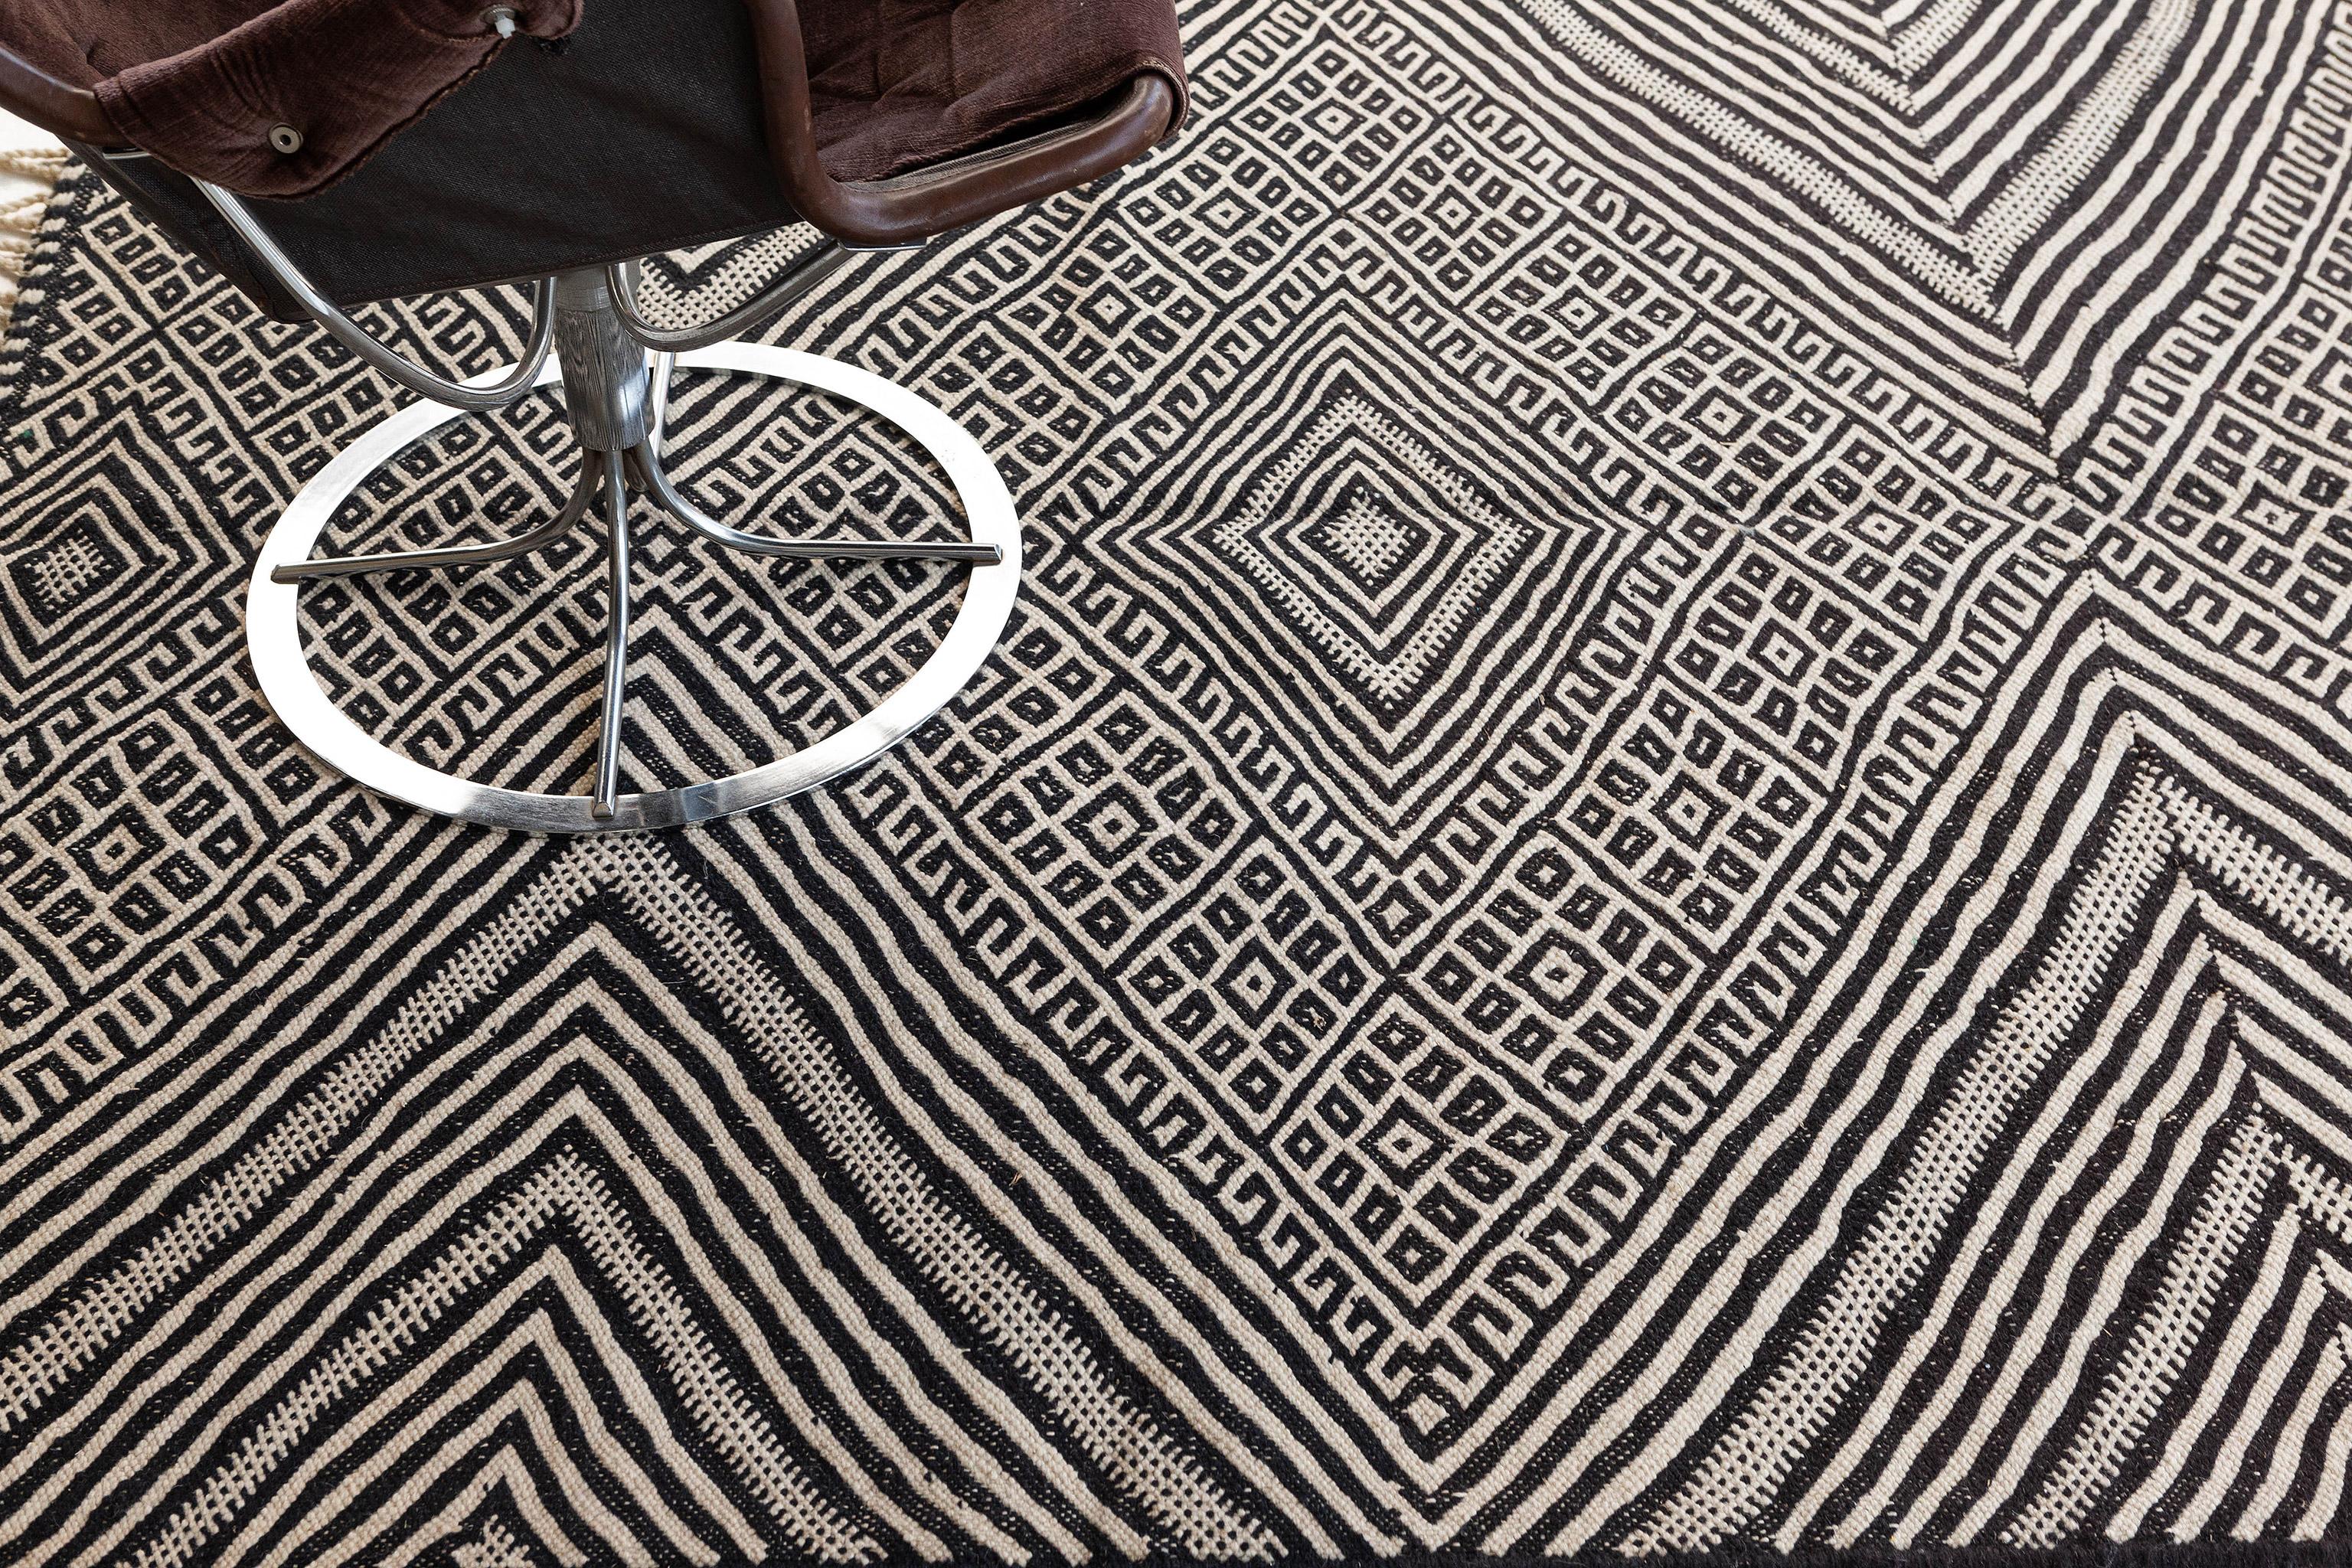 Dieser marokkanische Kilim-Teppich sorgt für einen bemerkenswerten Effekt, indem er ein Rautenmuster kreiert. Er verleiht Textur und einen bescheidenen grafischen Reiz, der einen warmen, entspannten Raum bildet. Das Feld ist mit Rebhuhnaugen in